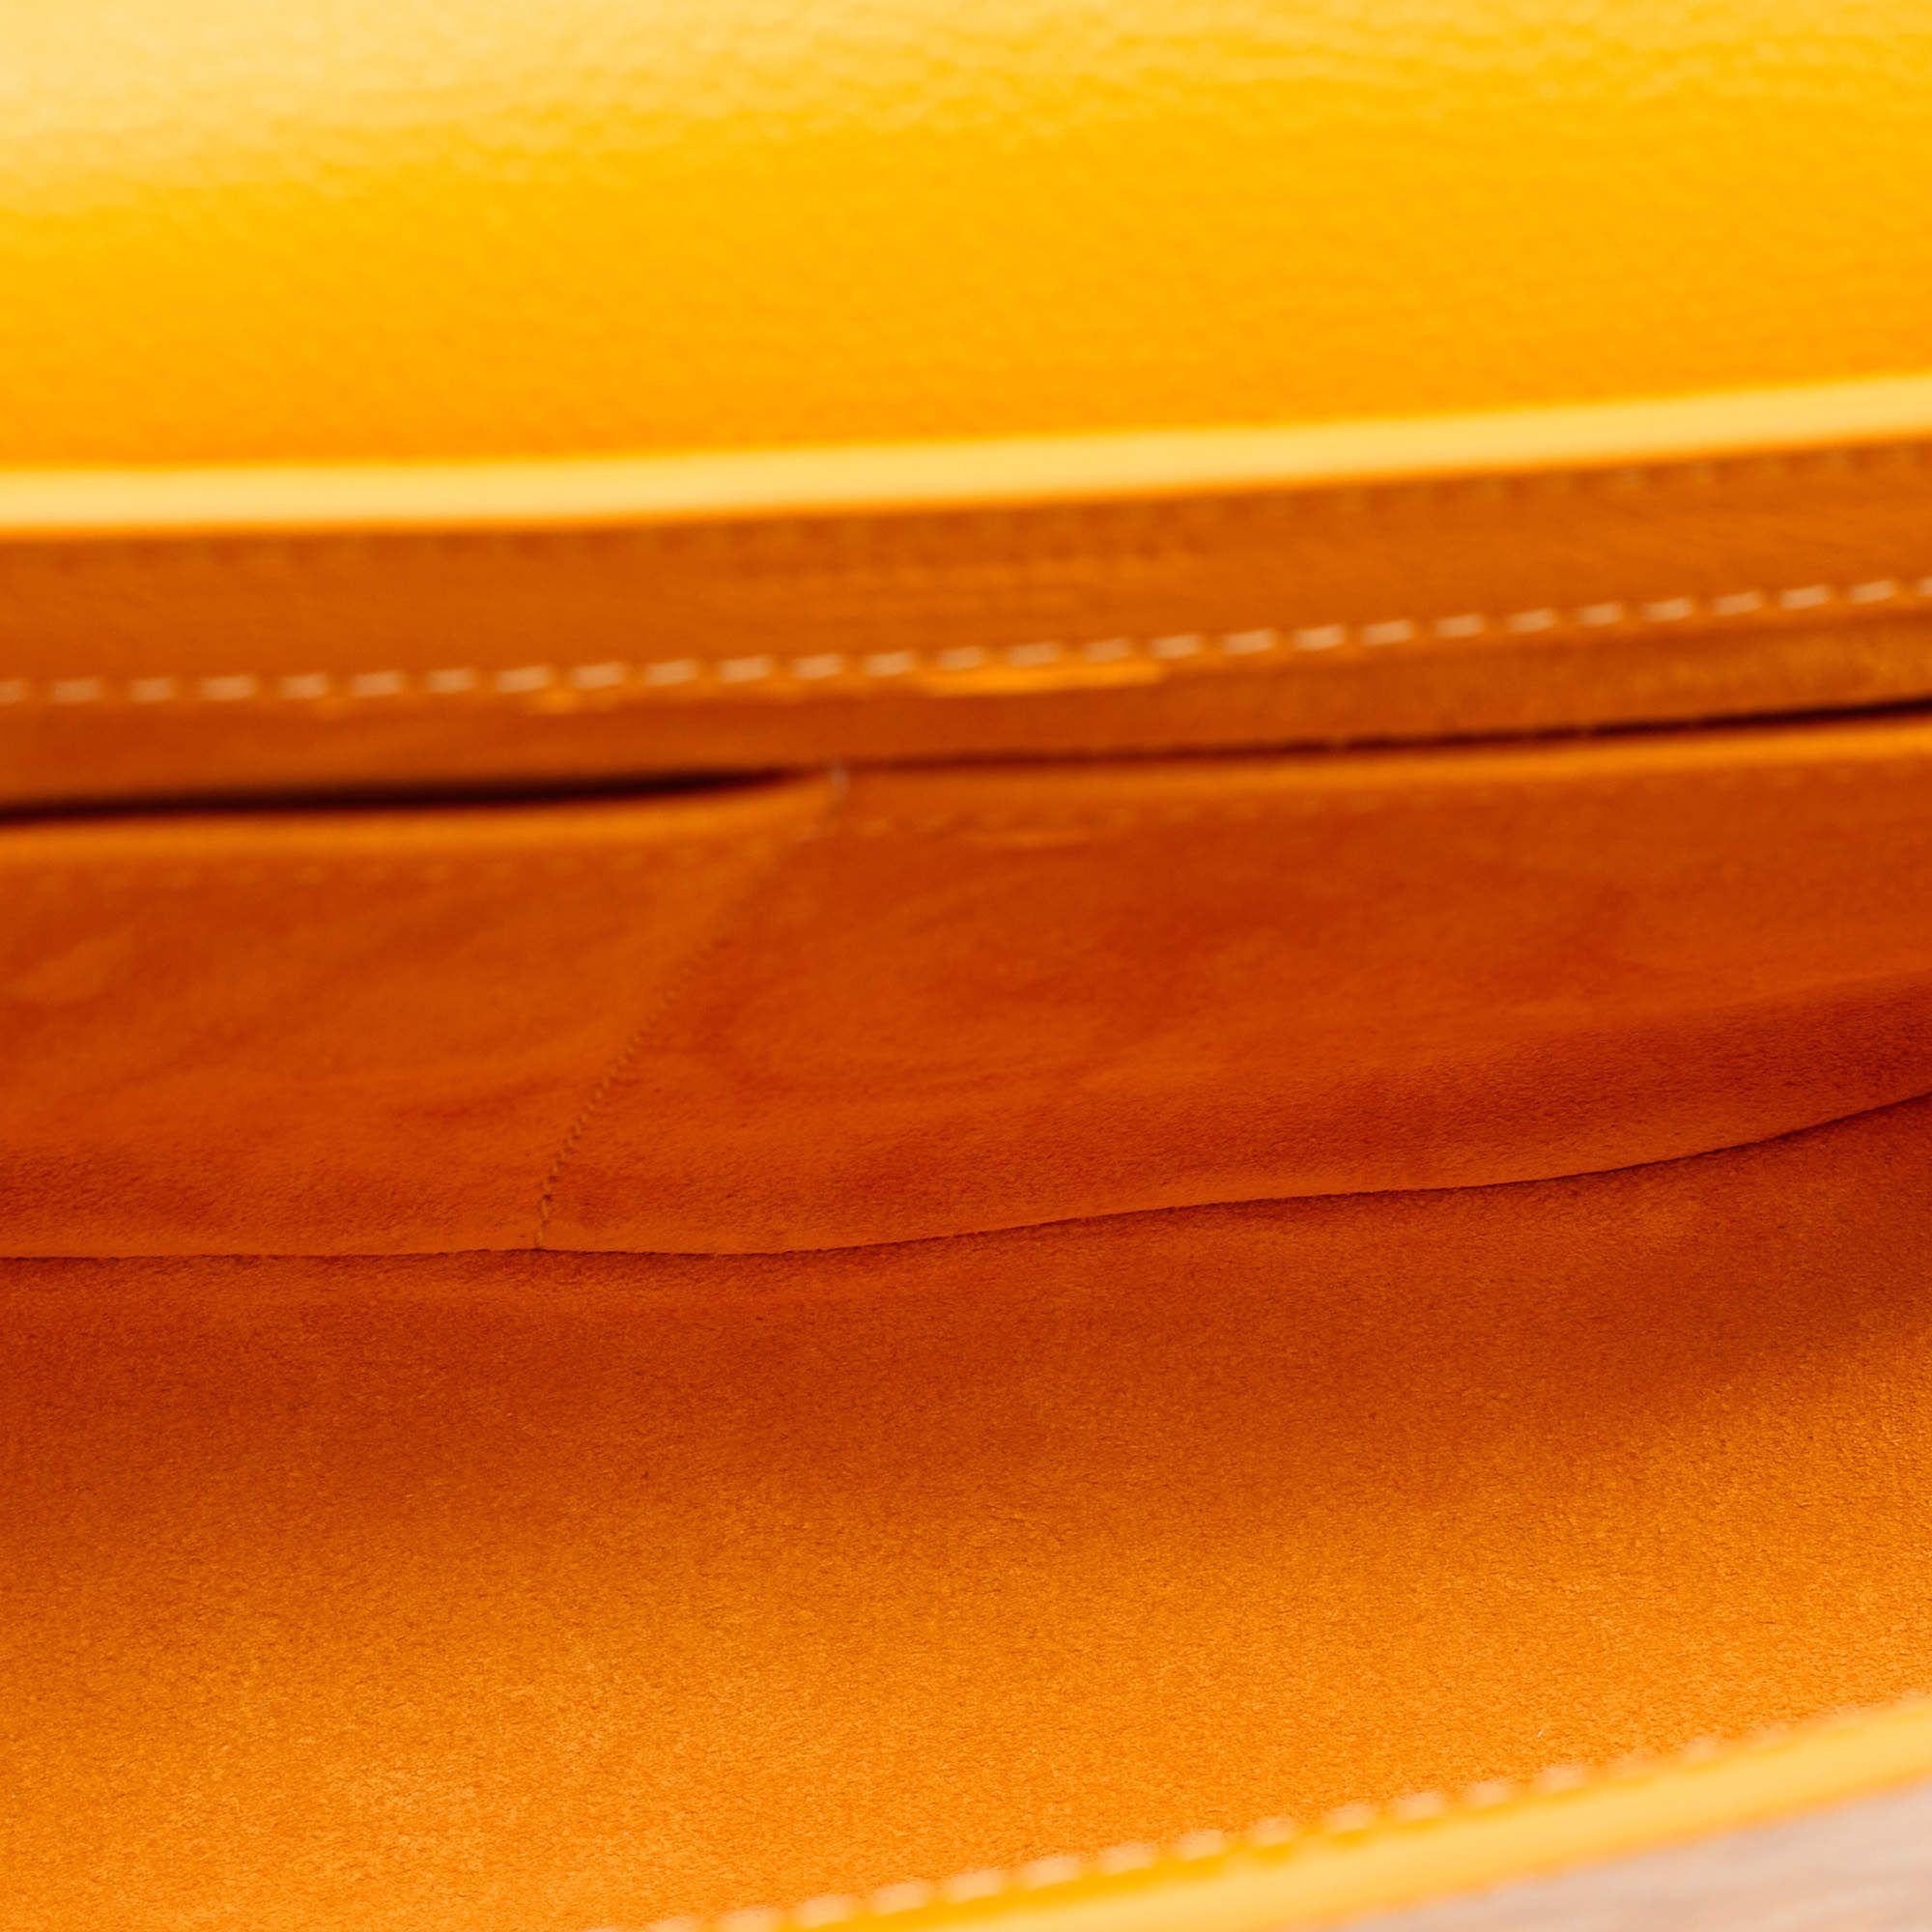 Goyard Bicolor 233 PM Bag – The Closet